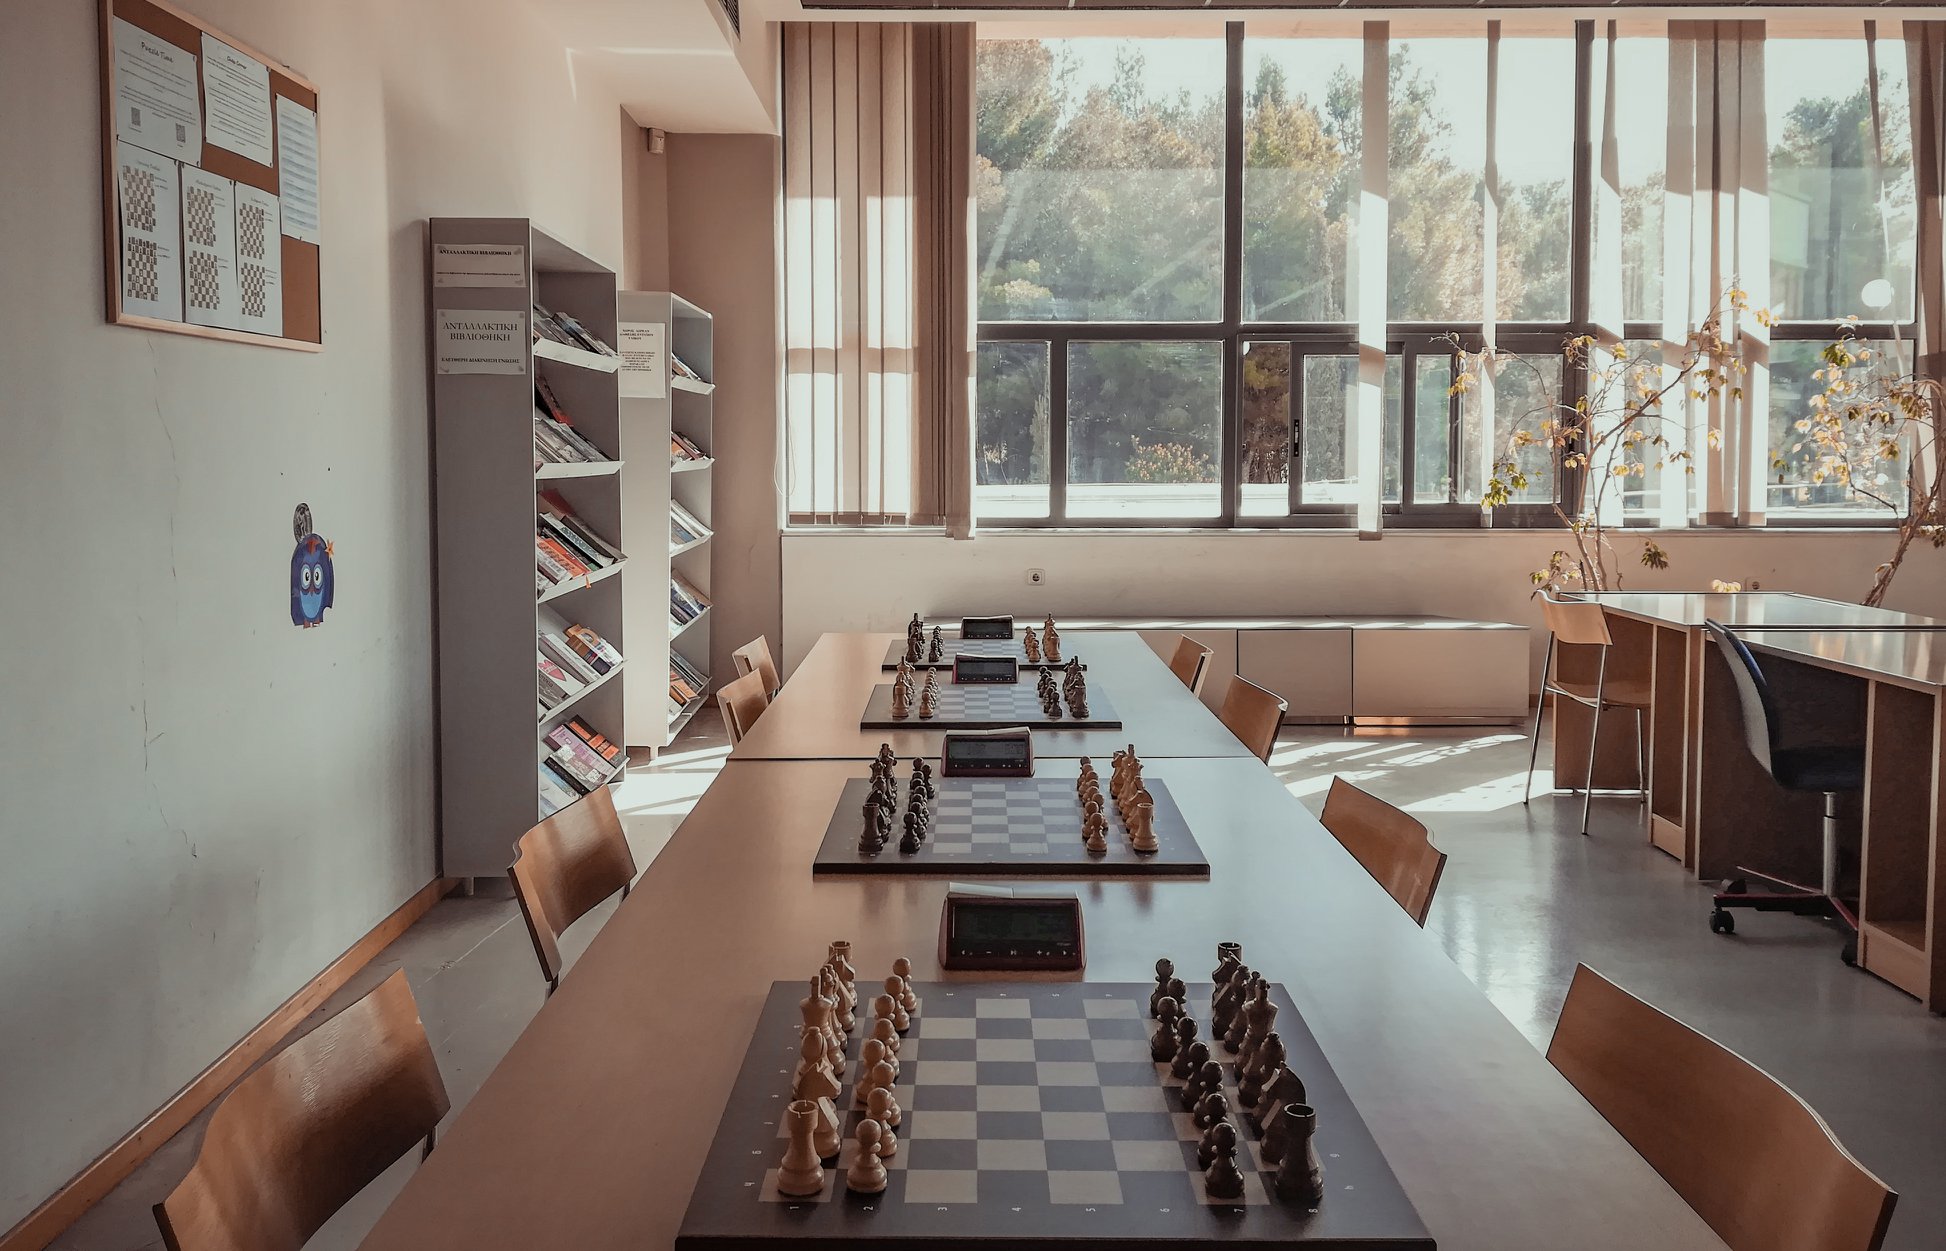  Το Σκάκι στο Πολυτεχνείο αποκτά την δική του σταθερή γωνιά